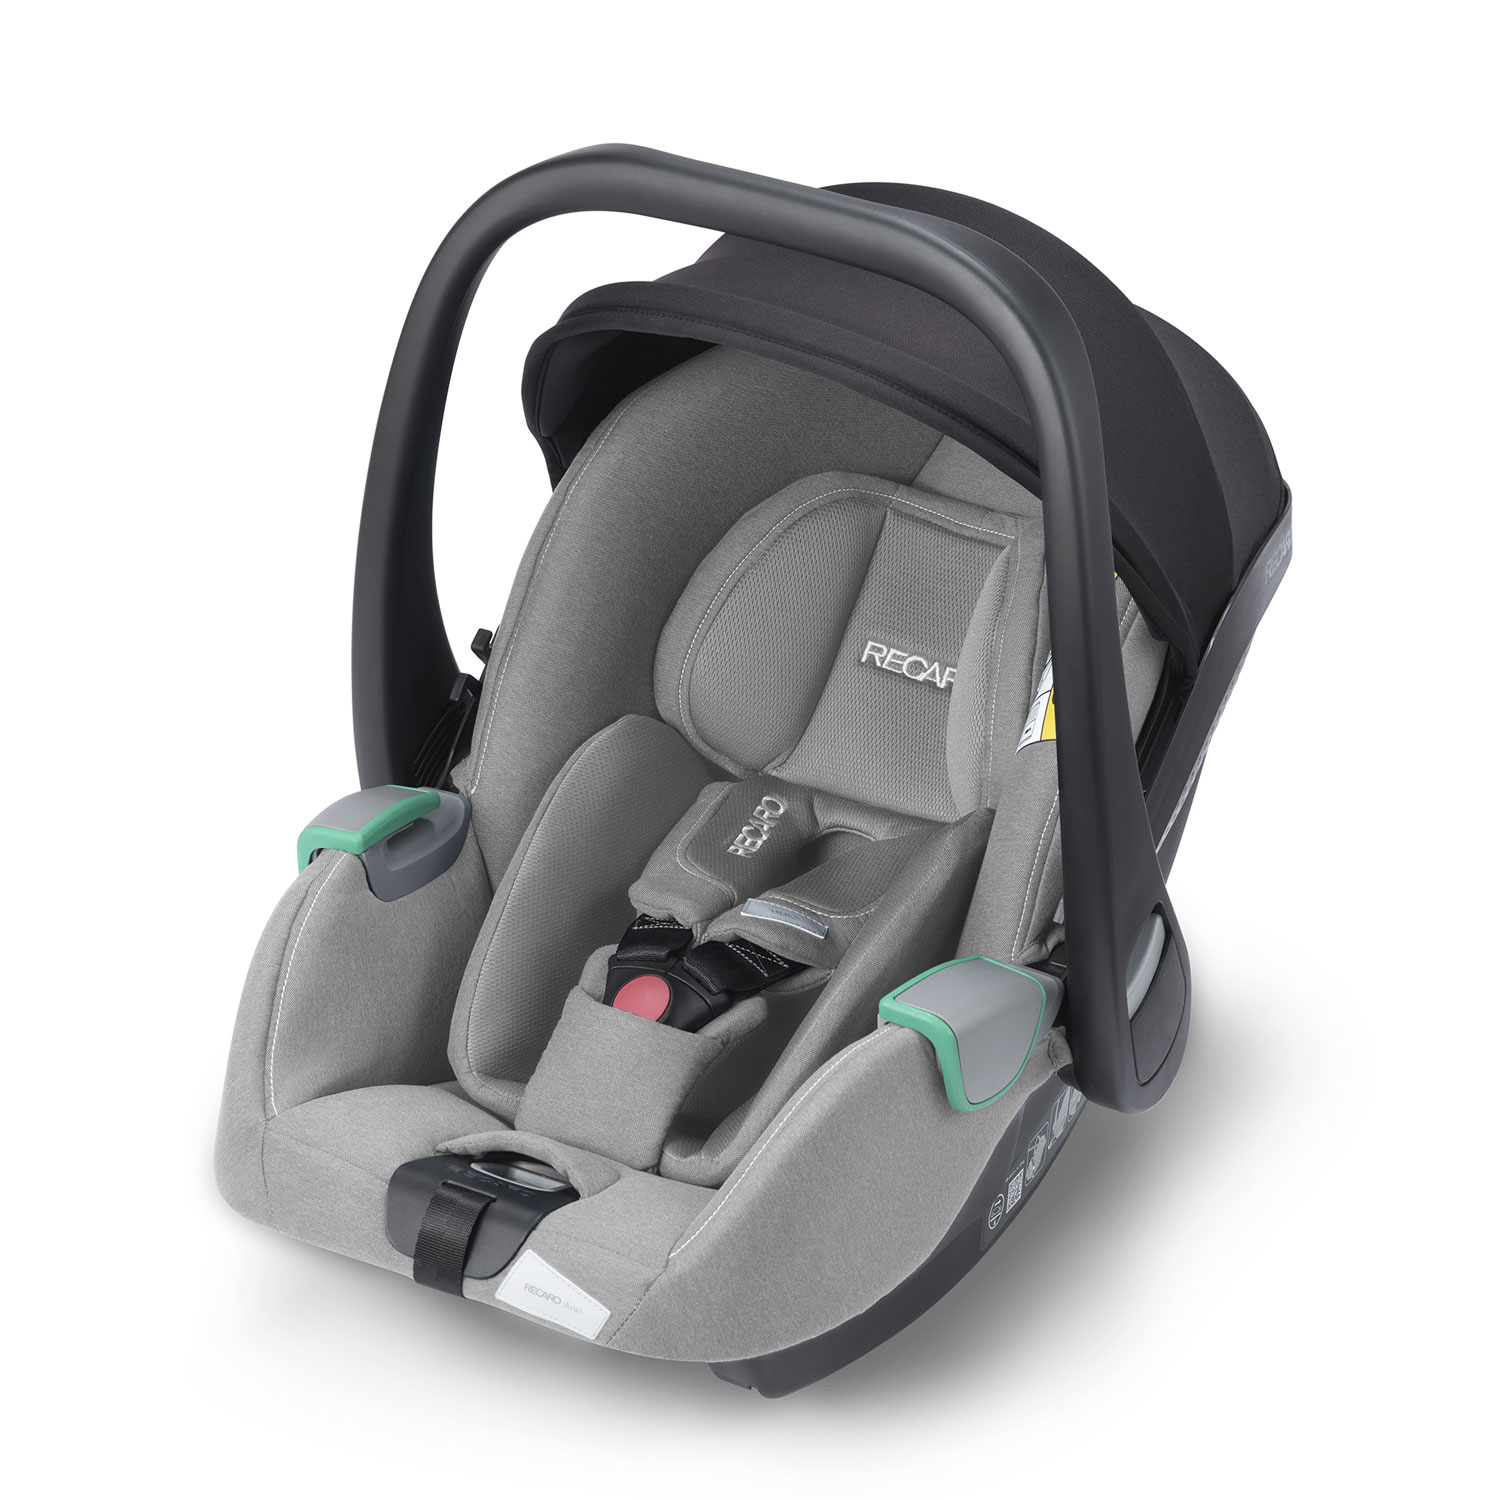 eng_pl_RECARO-Avan-Prime-Carbon-Grey-Child-Seat-0-13-kg-20225_1